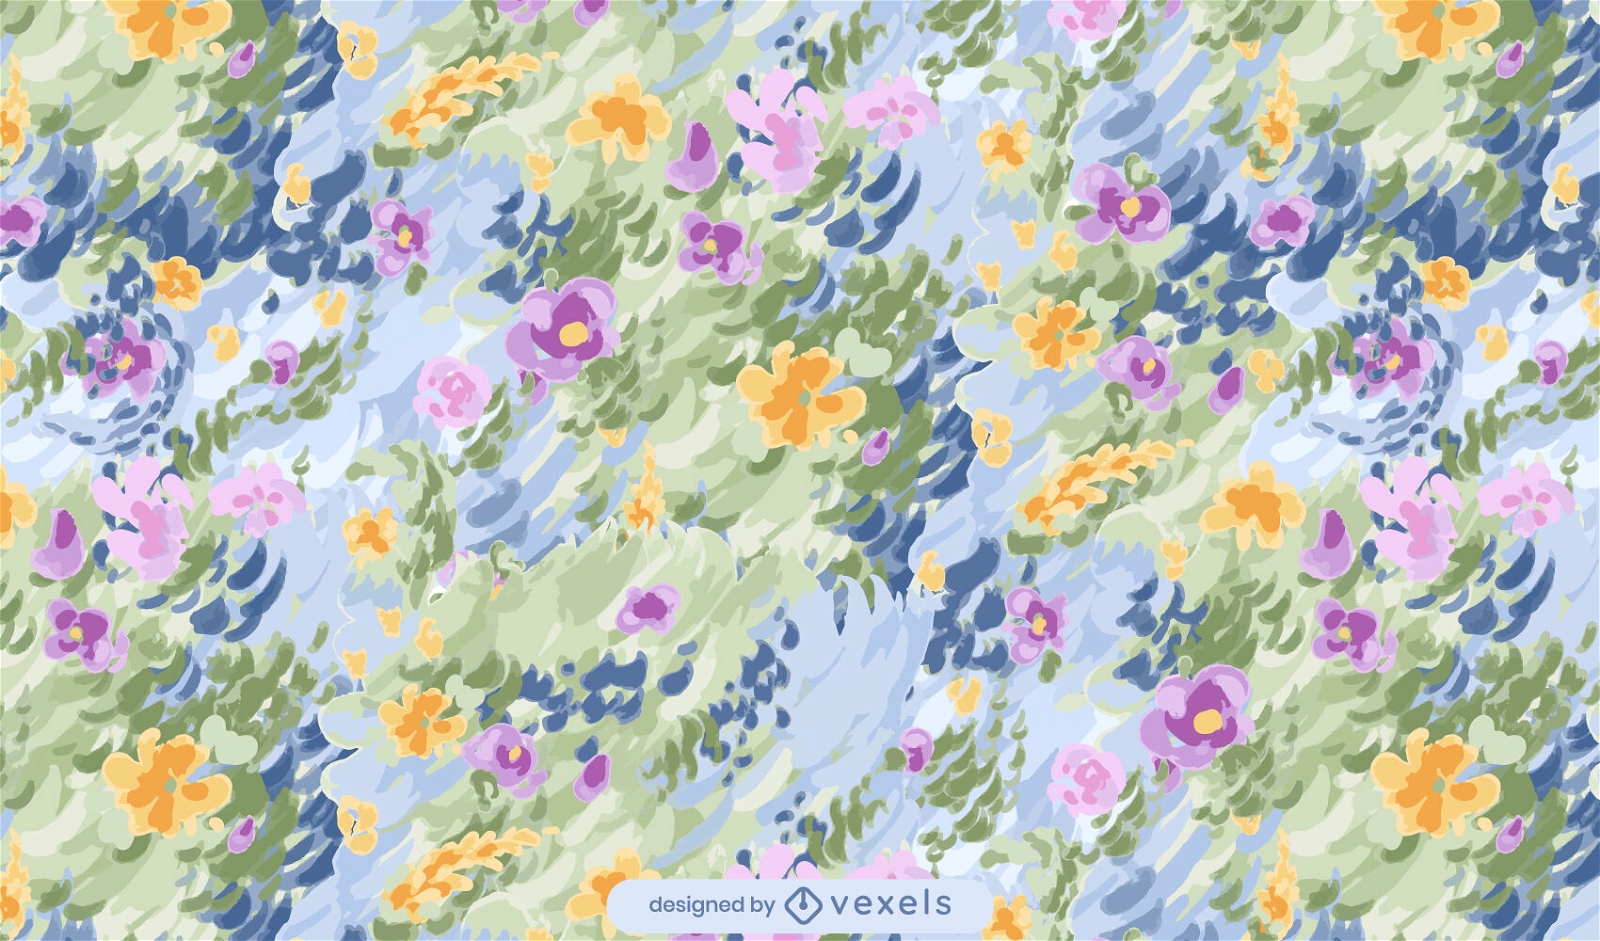 Impressionist flower garden pattern design